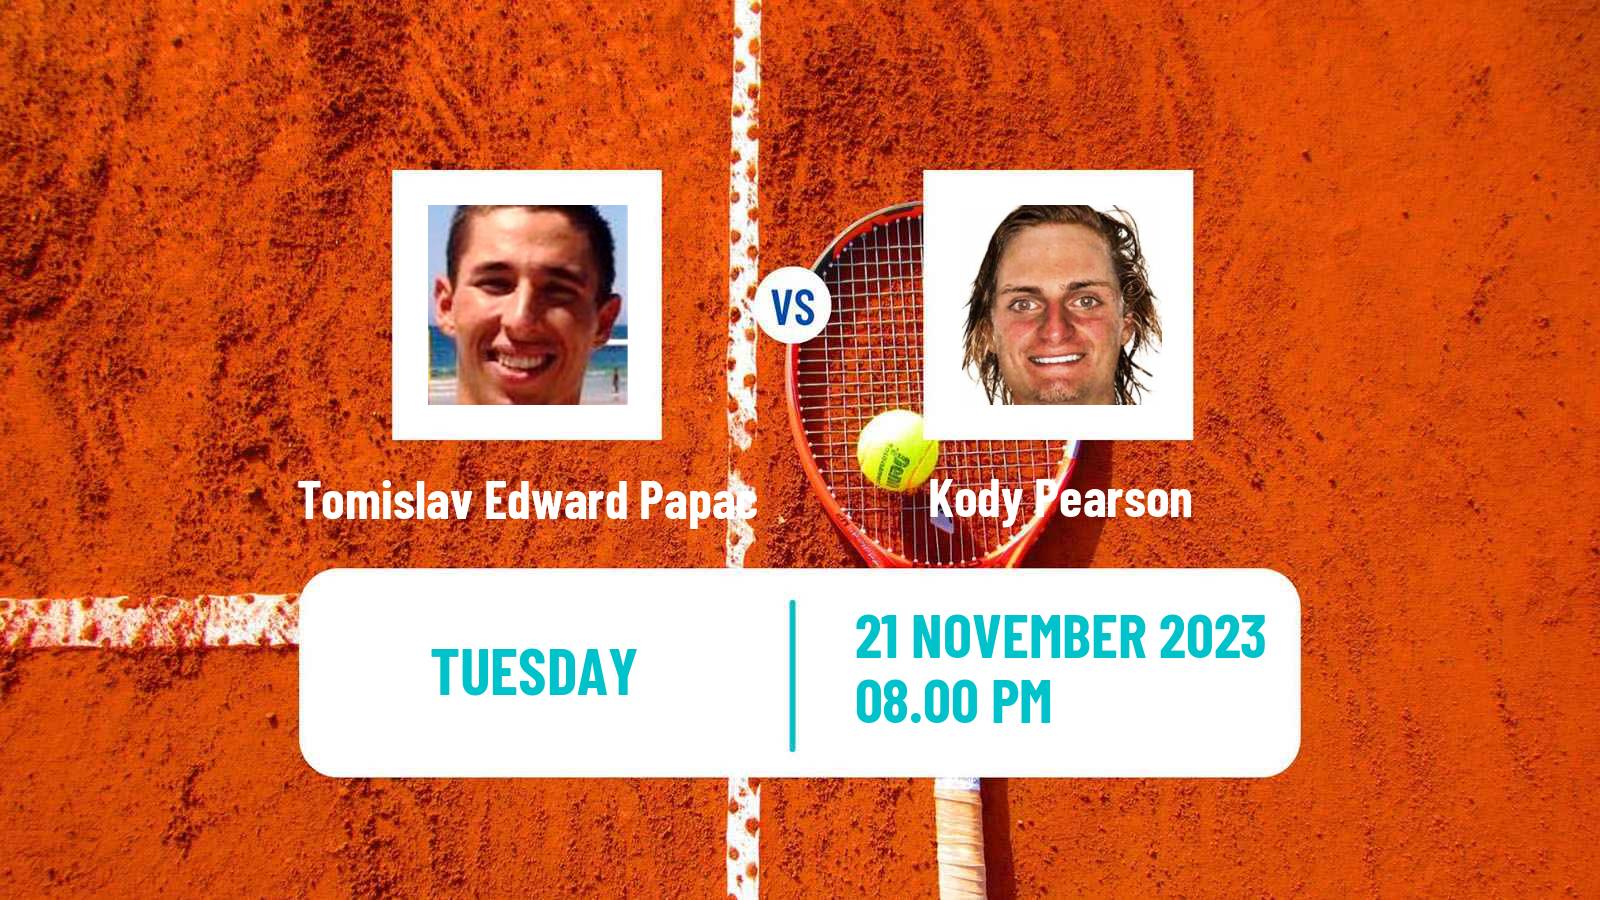 Tennis ITF M25 Brisbane Men Tomislav Edward Papac - Kody Pearson